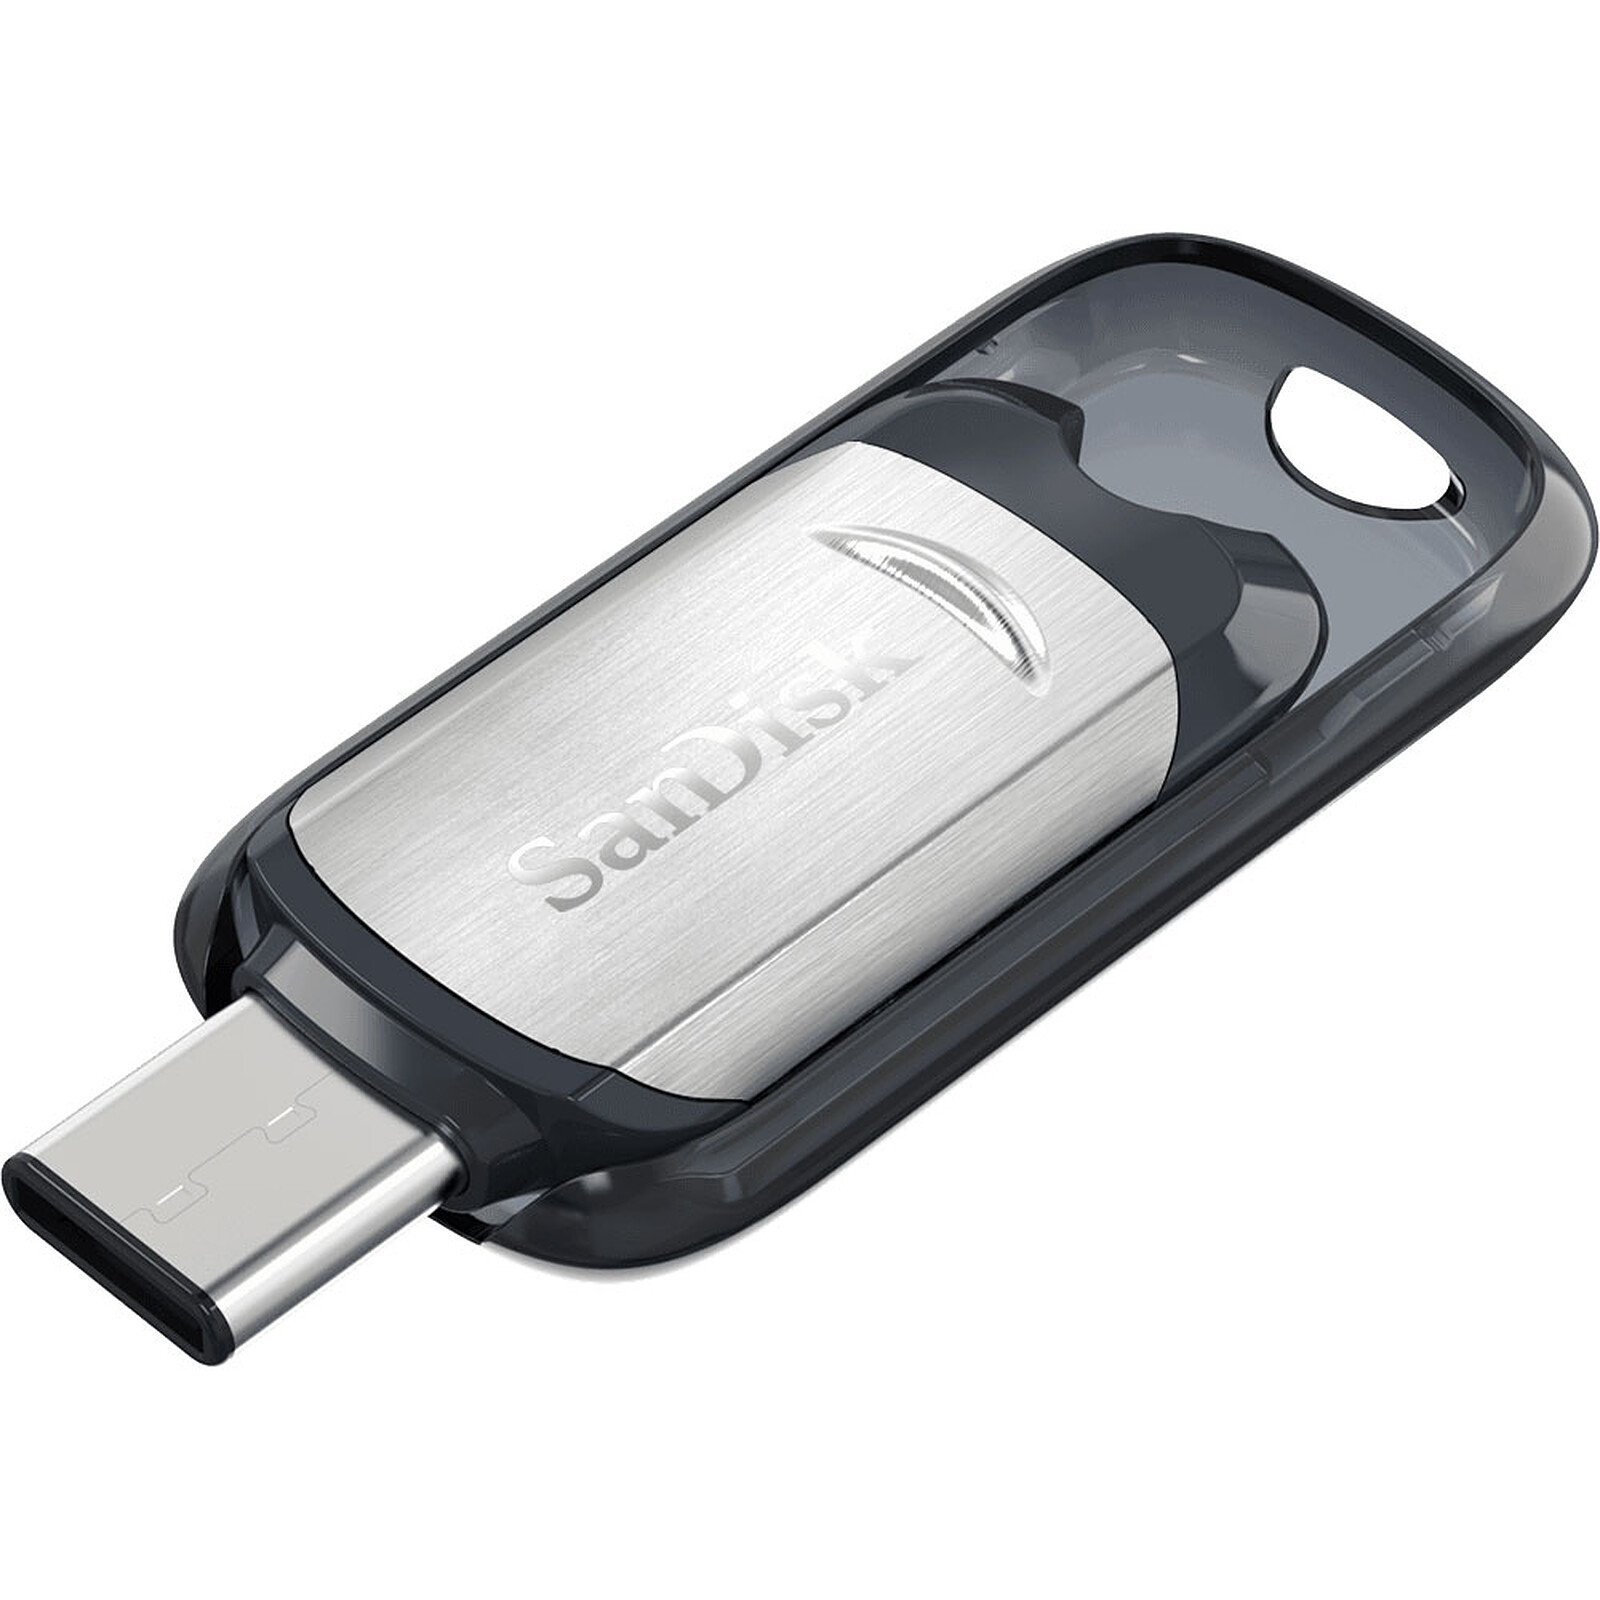 SanDisk Ultra Clé USB 3.0 32 Go Rouge - Clé USB - LDLC